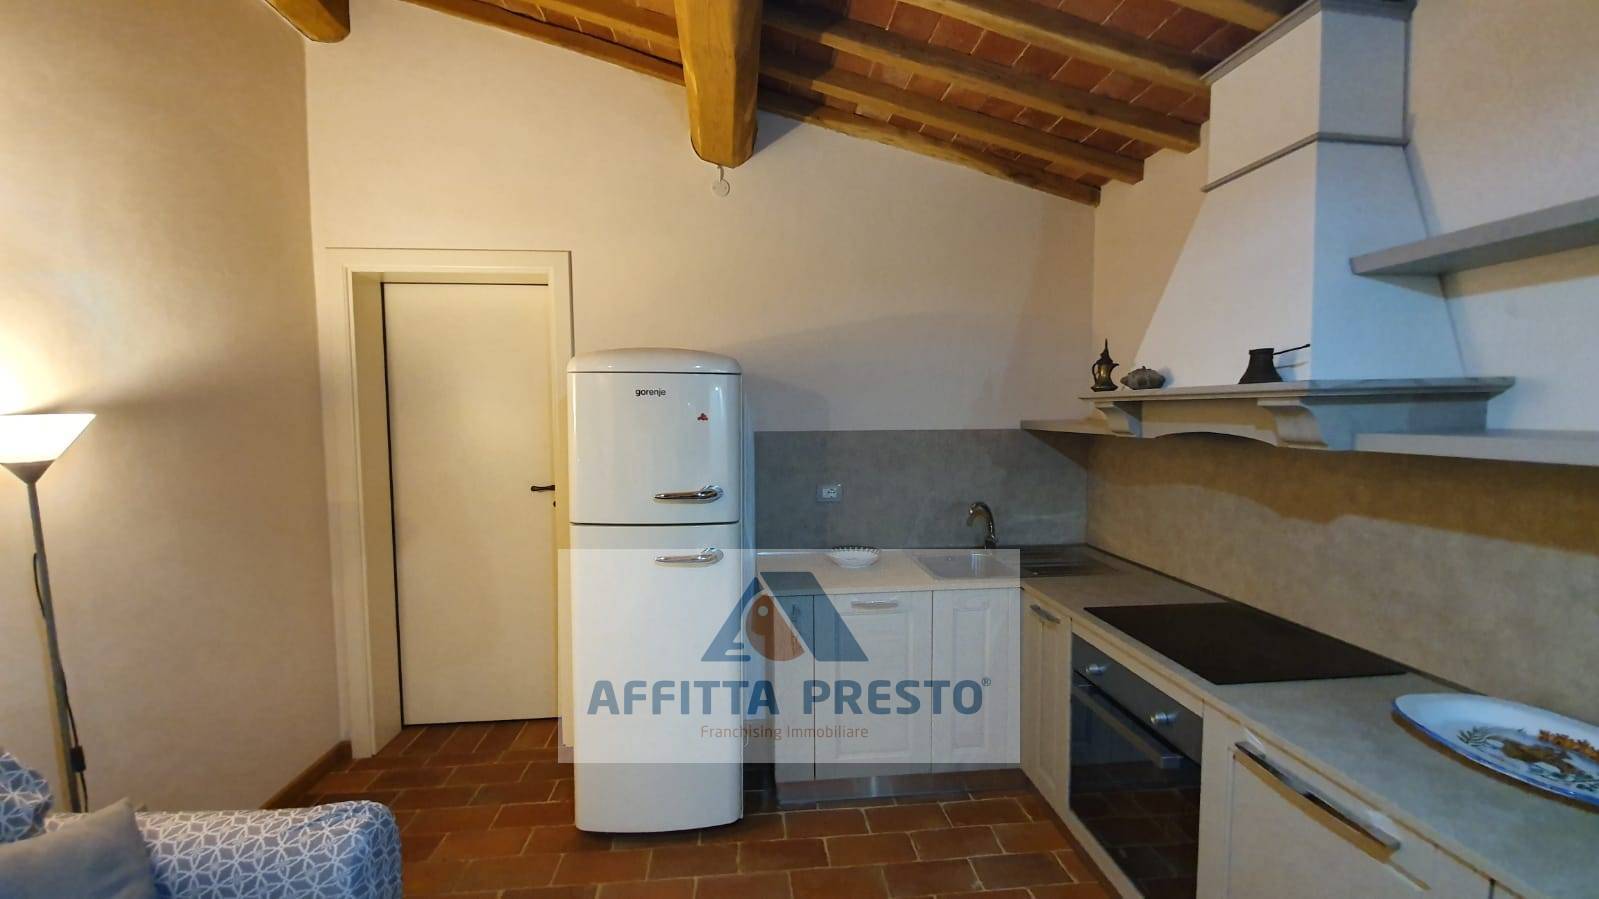 Appartamento in affitto a San Miniato, 2 locali, zona gnano, prezzo € 550 | PortaleAgenzieImmobiliari.it